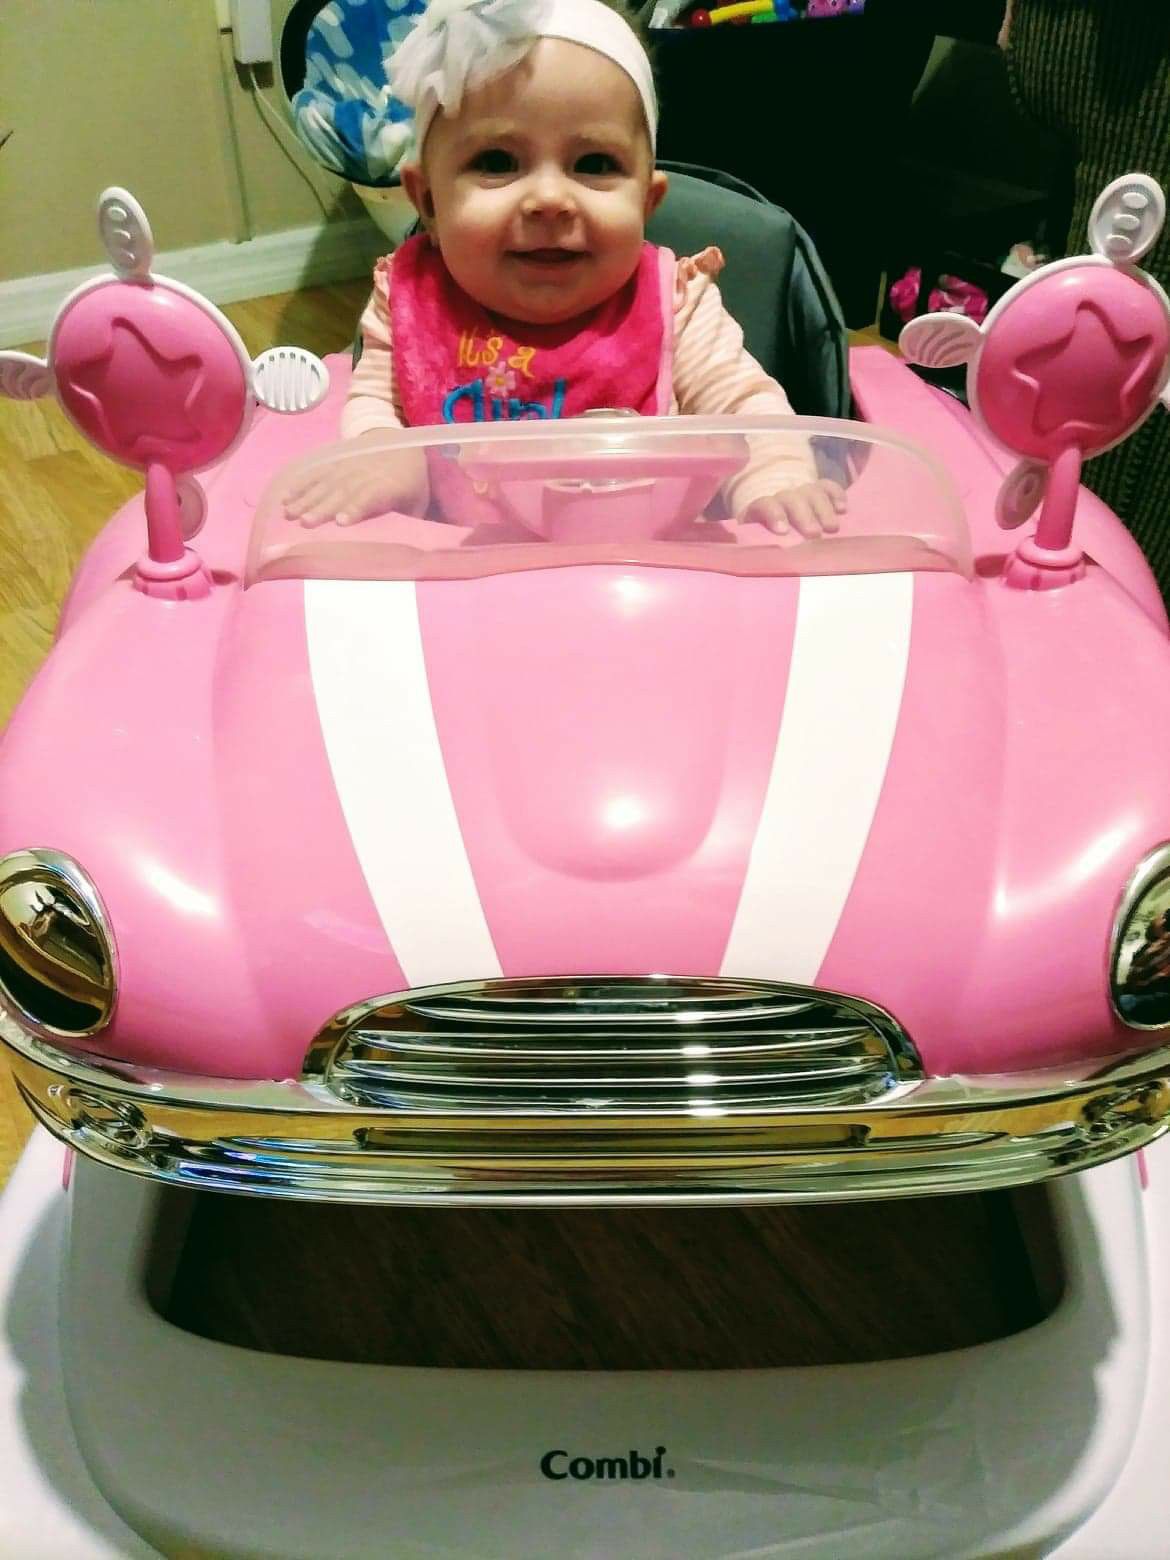 Combi Pink Car walker